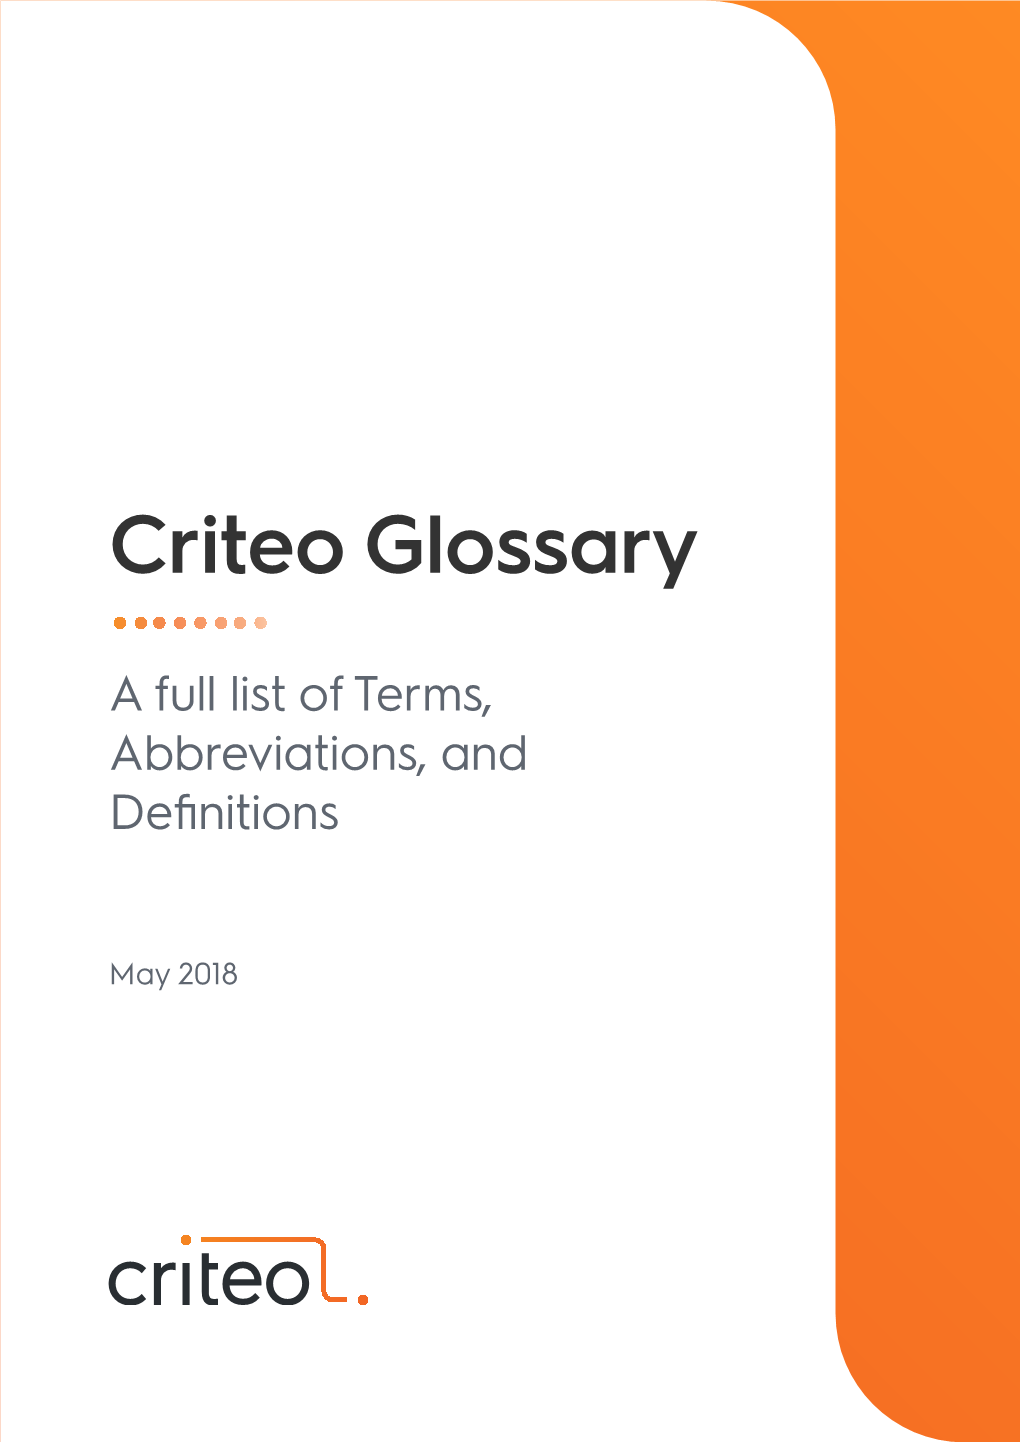 Criteo Glossary